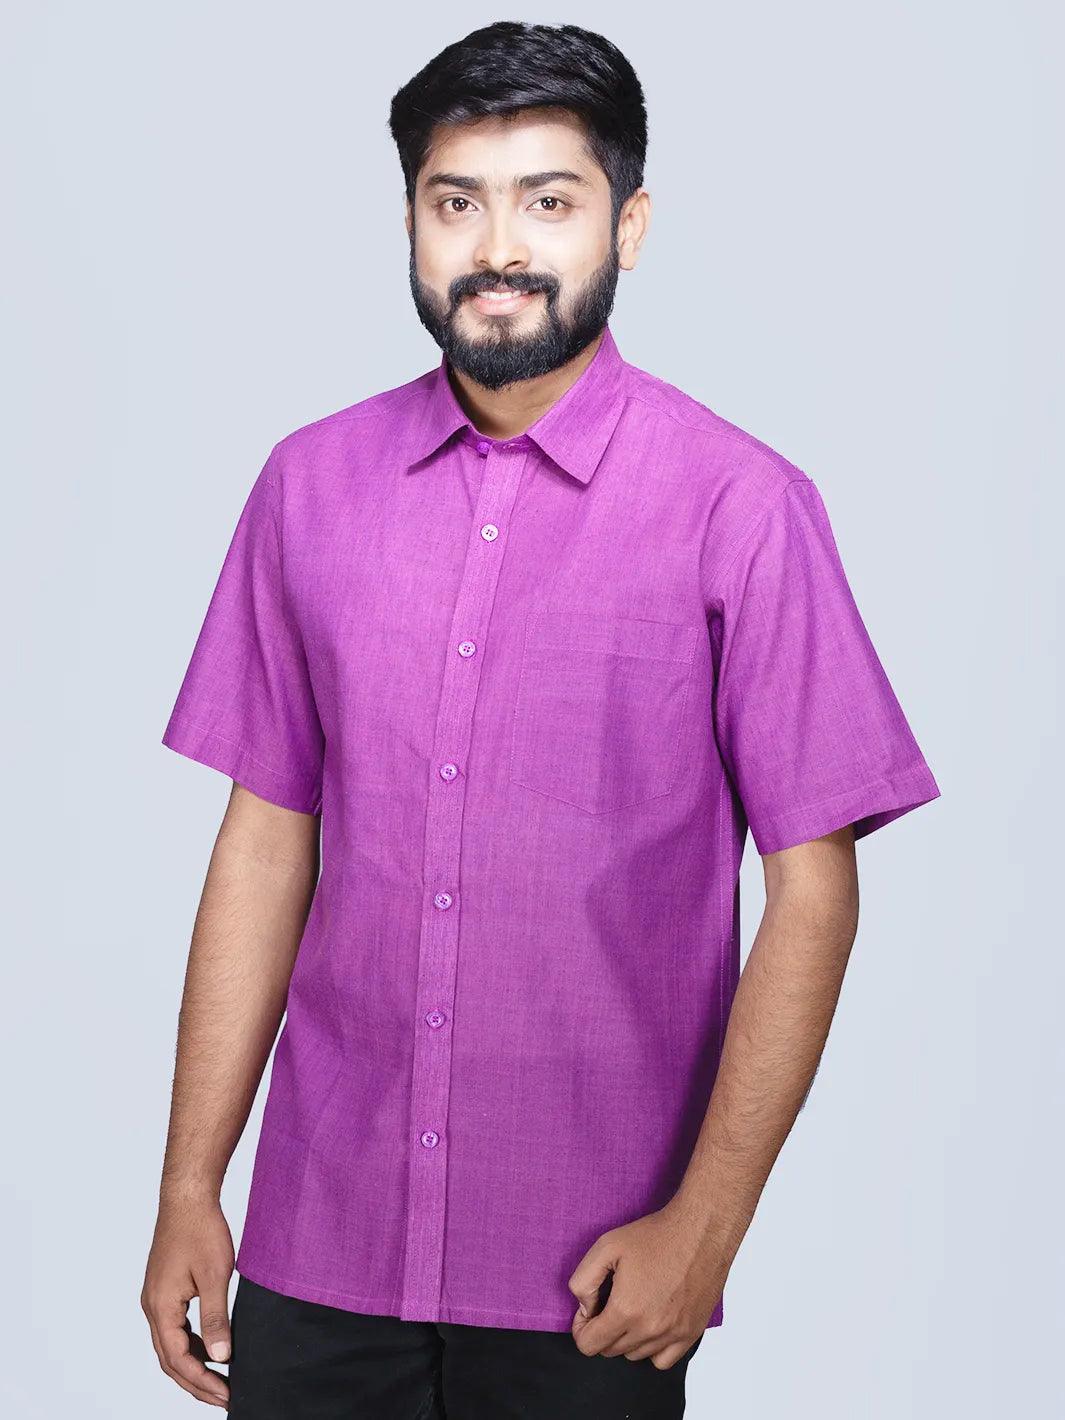 Dual Tone Handwoven Organic Cotton Formal Men Shirt - WeaversIndia